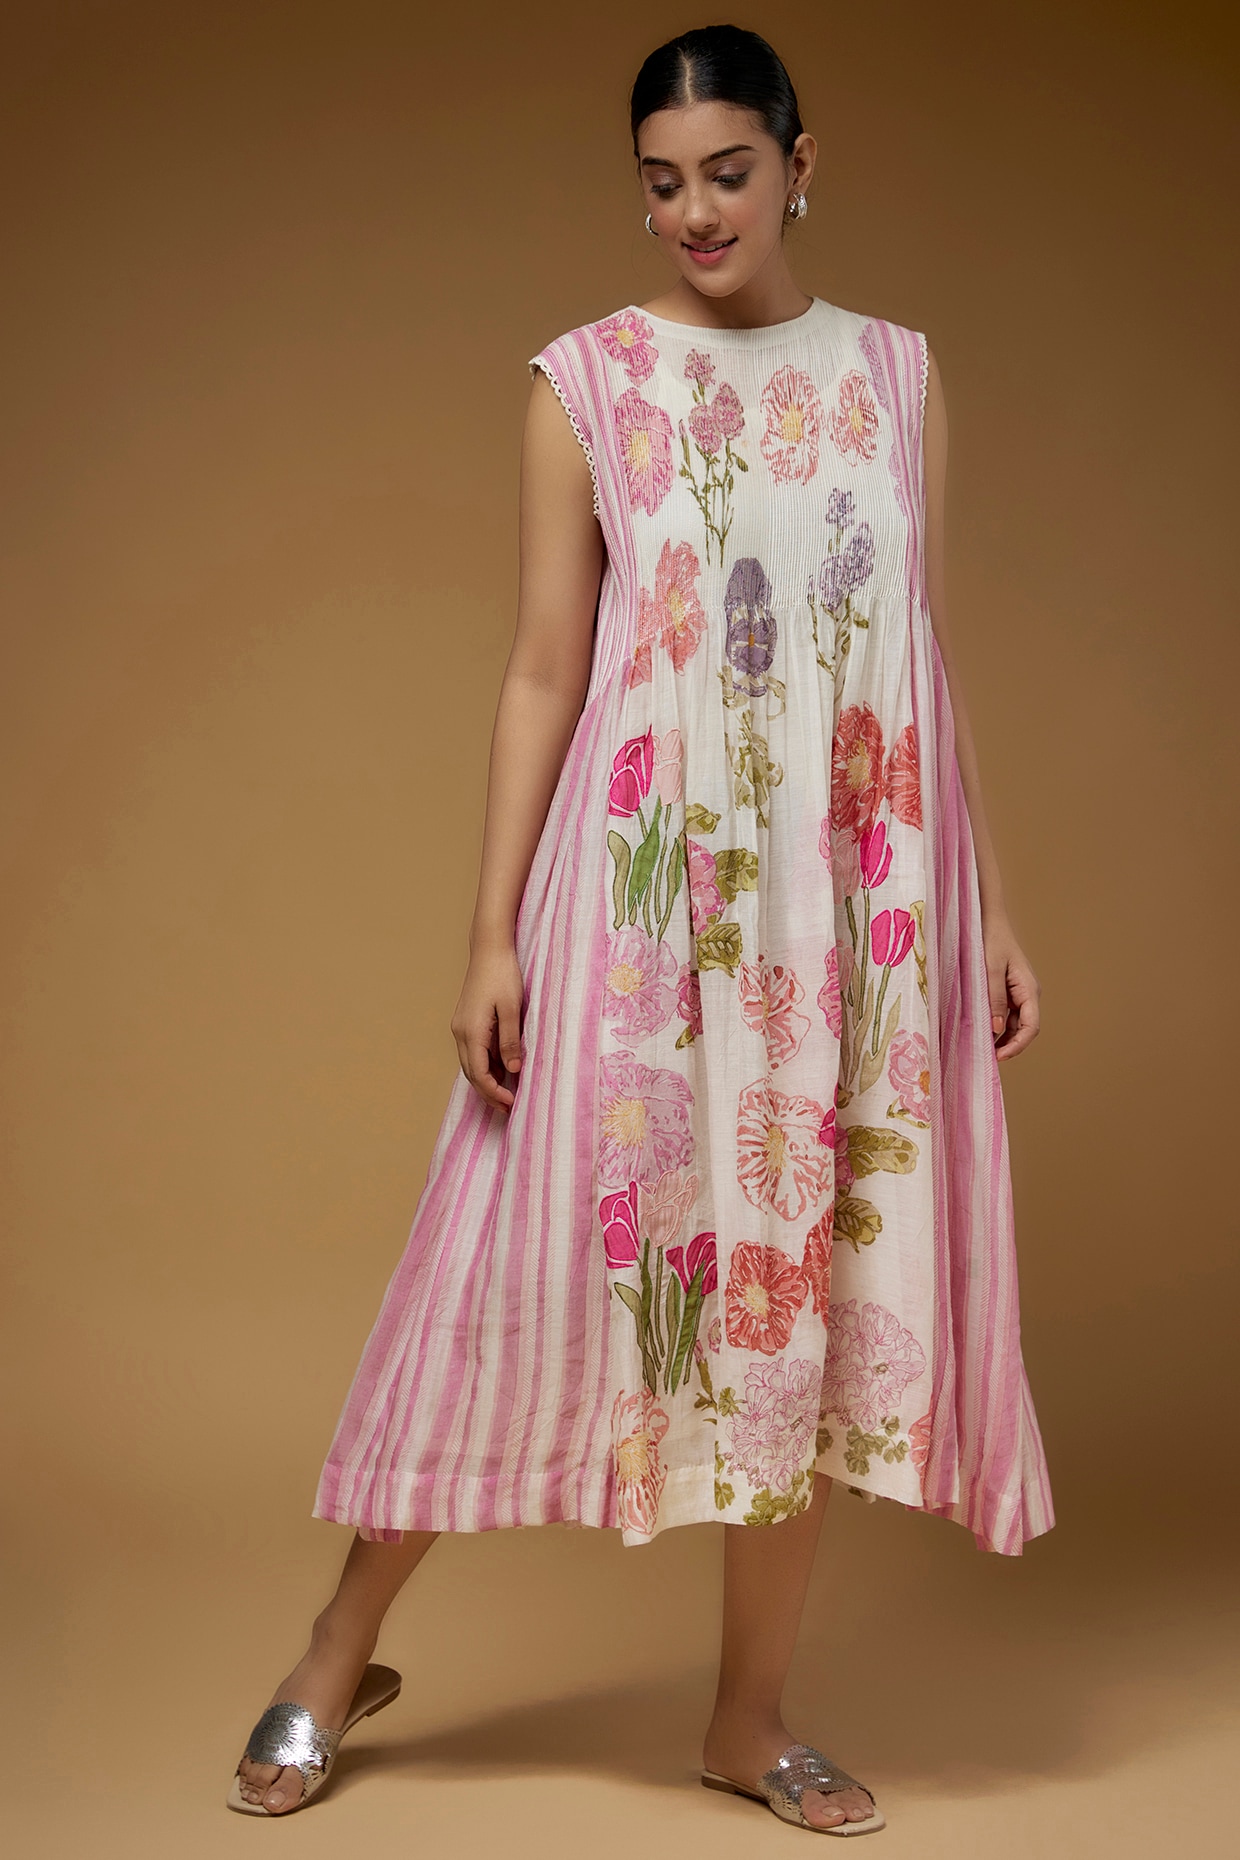 Stitched Baby Blue Pigment Print Cotton Suits Online With Mulmul Dupatta |  Kiran's Boutique